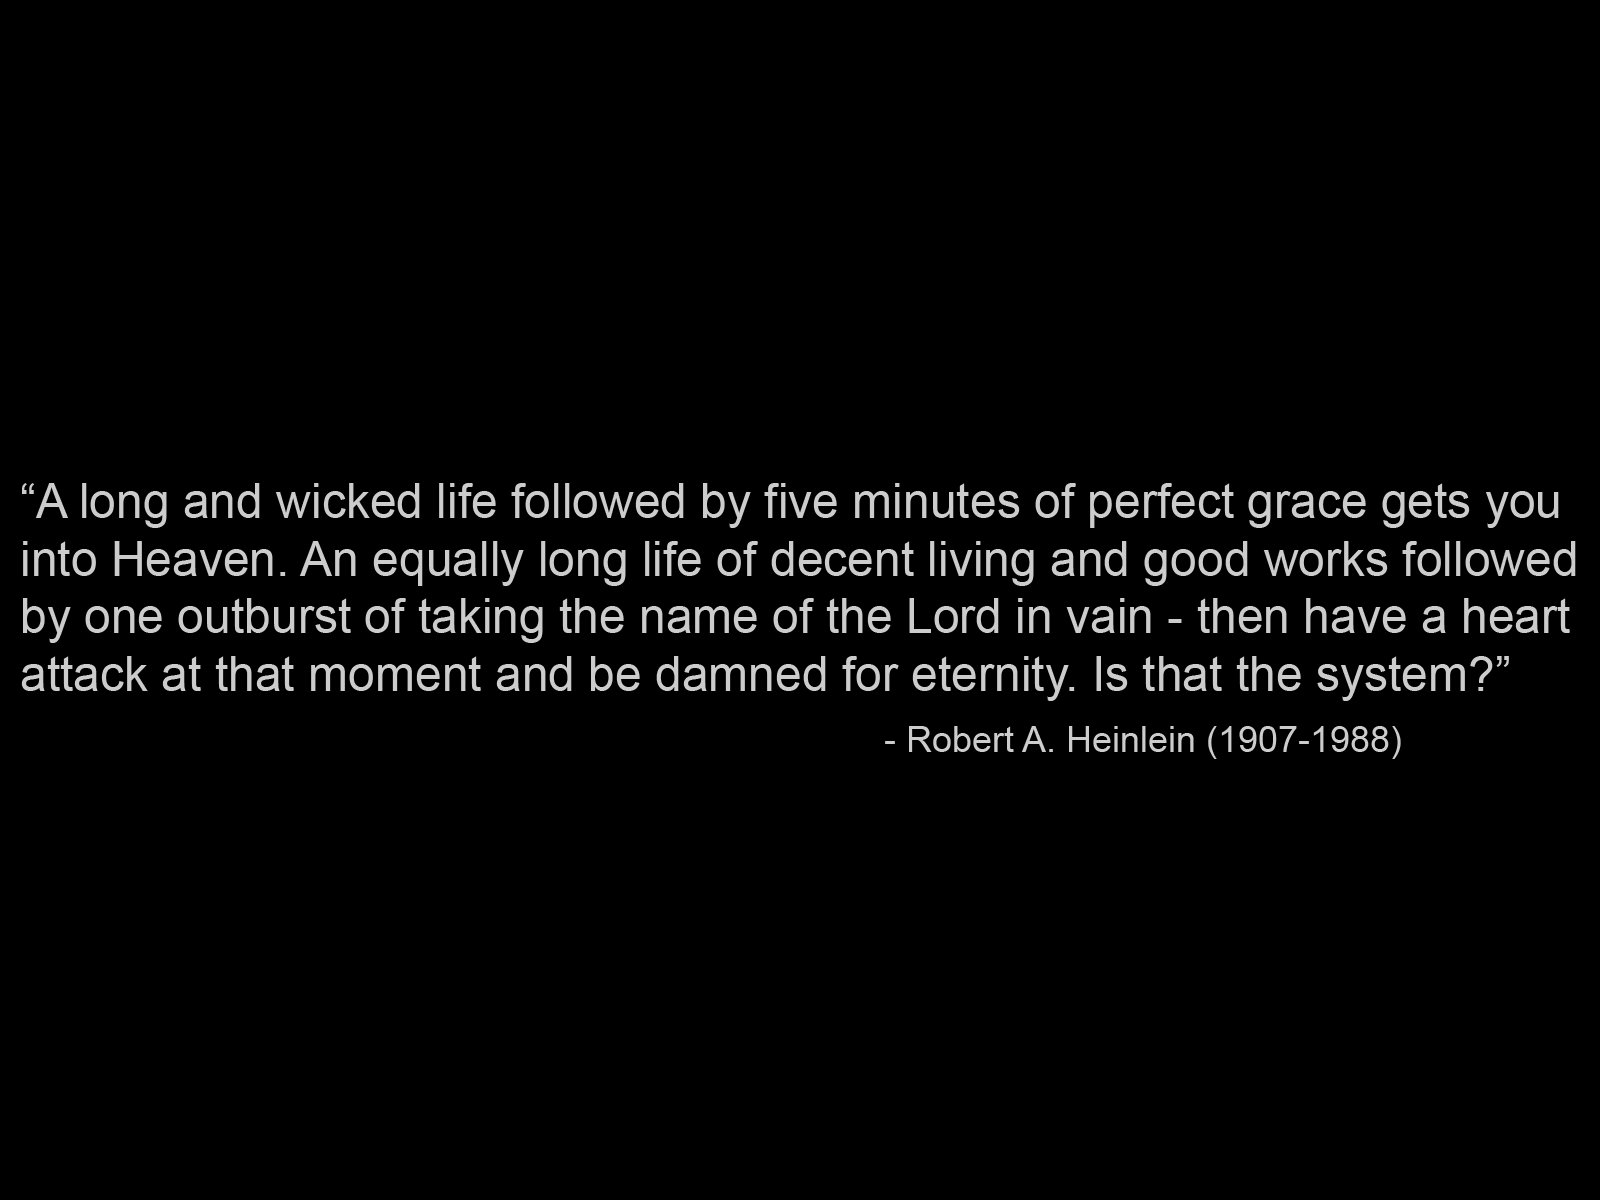 Robert A. Heinlein's quote #4